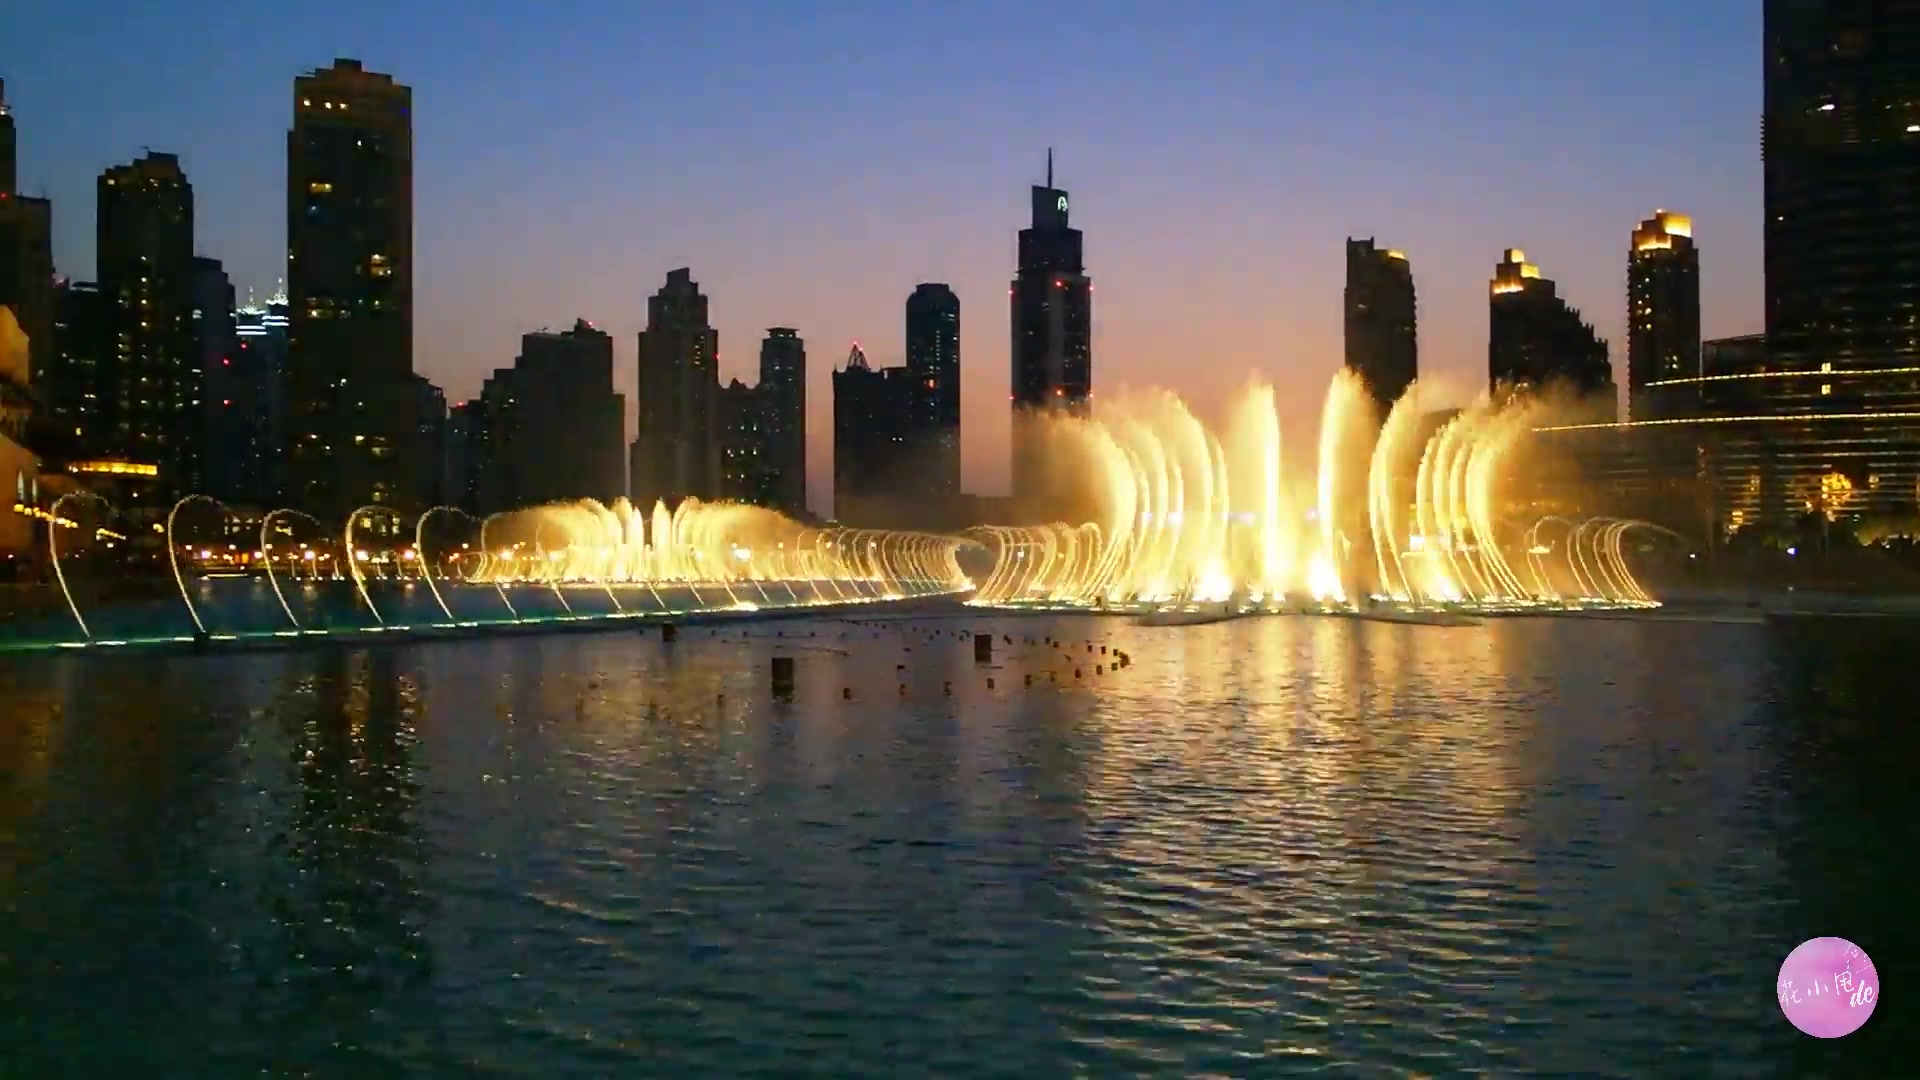 全球最大编舞系统规模的迪拜音乐喷泉慢歌一曲!